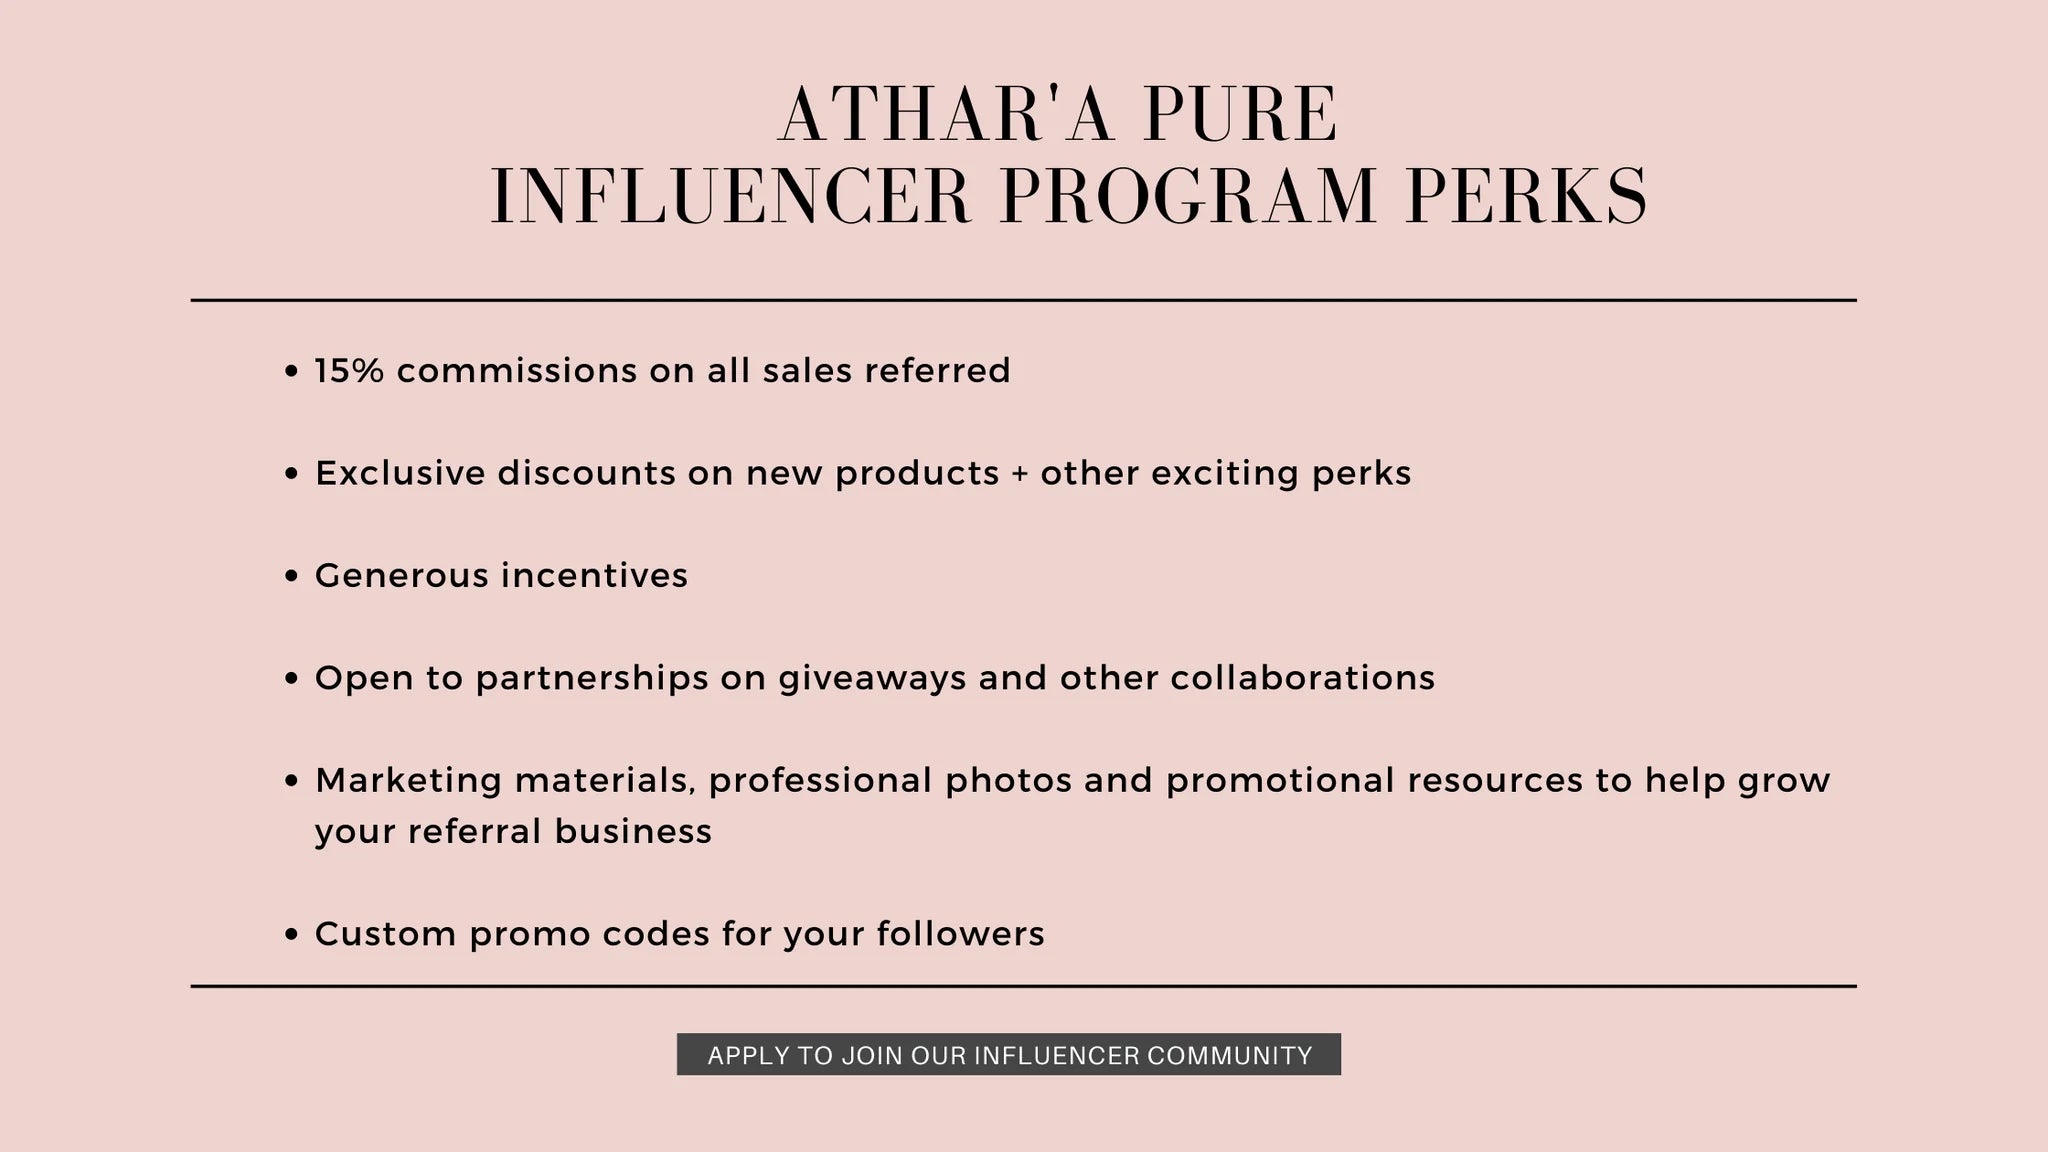 Athar'a Pure Influencer Program Perks